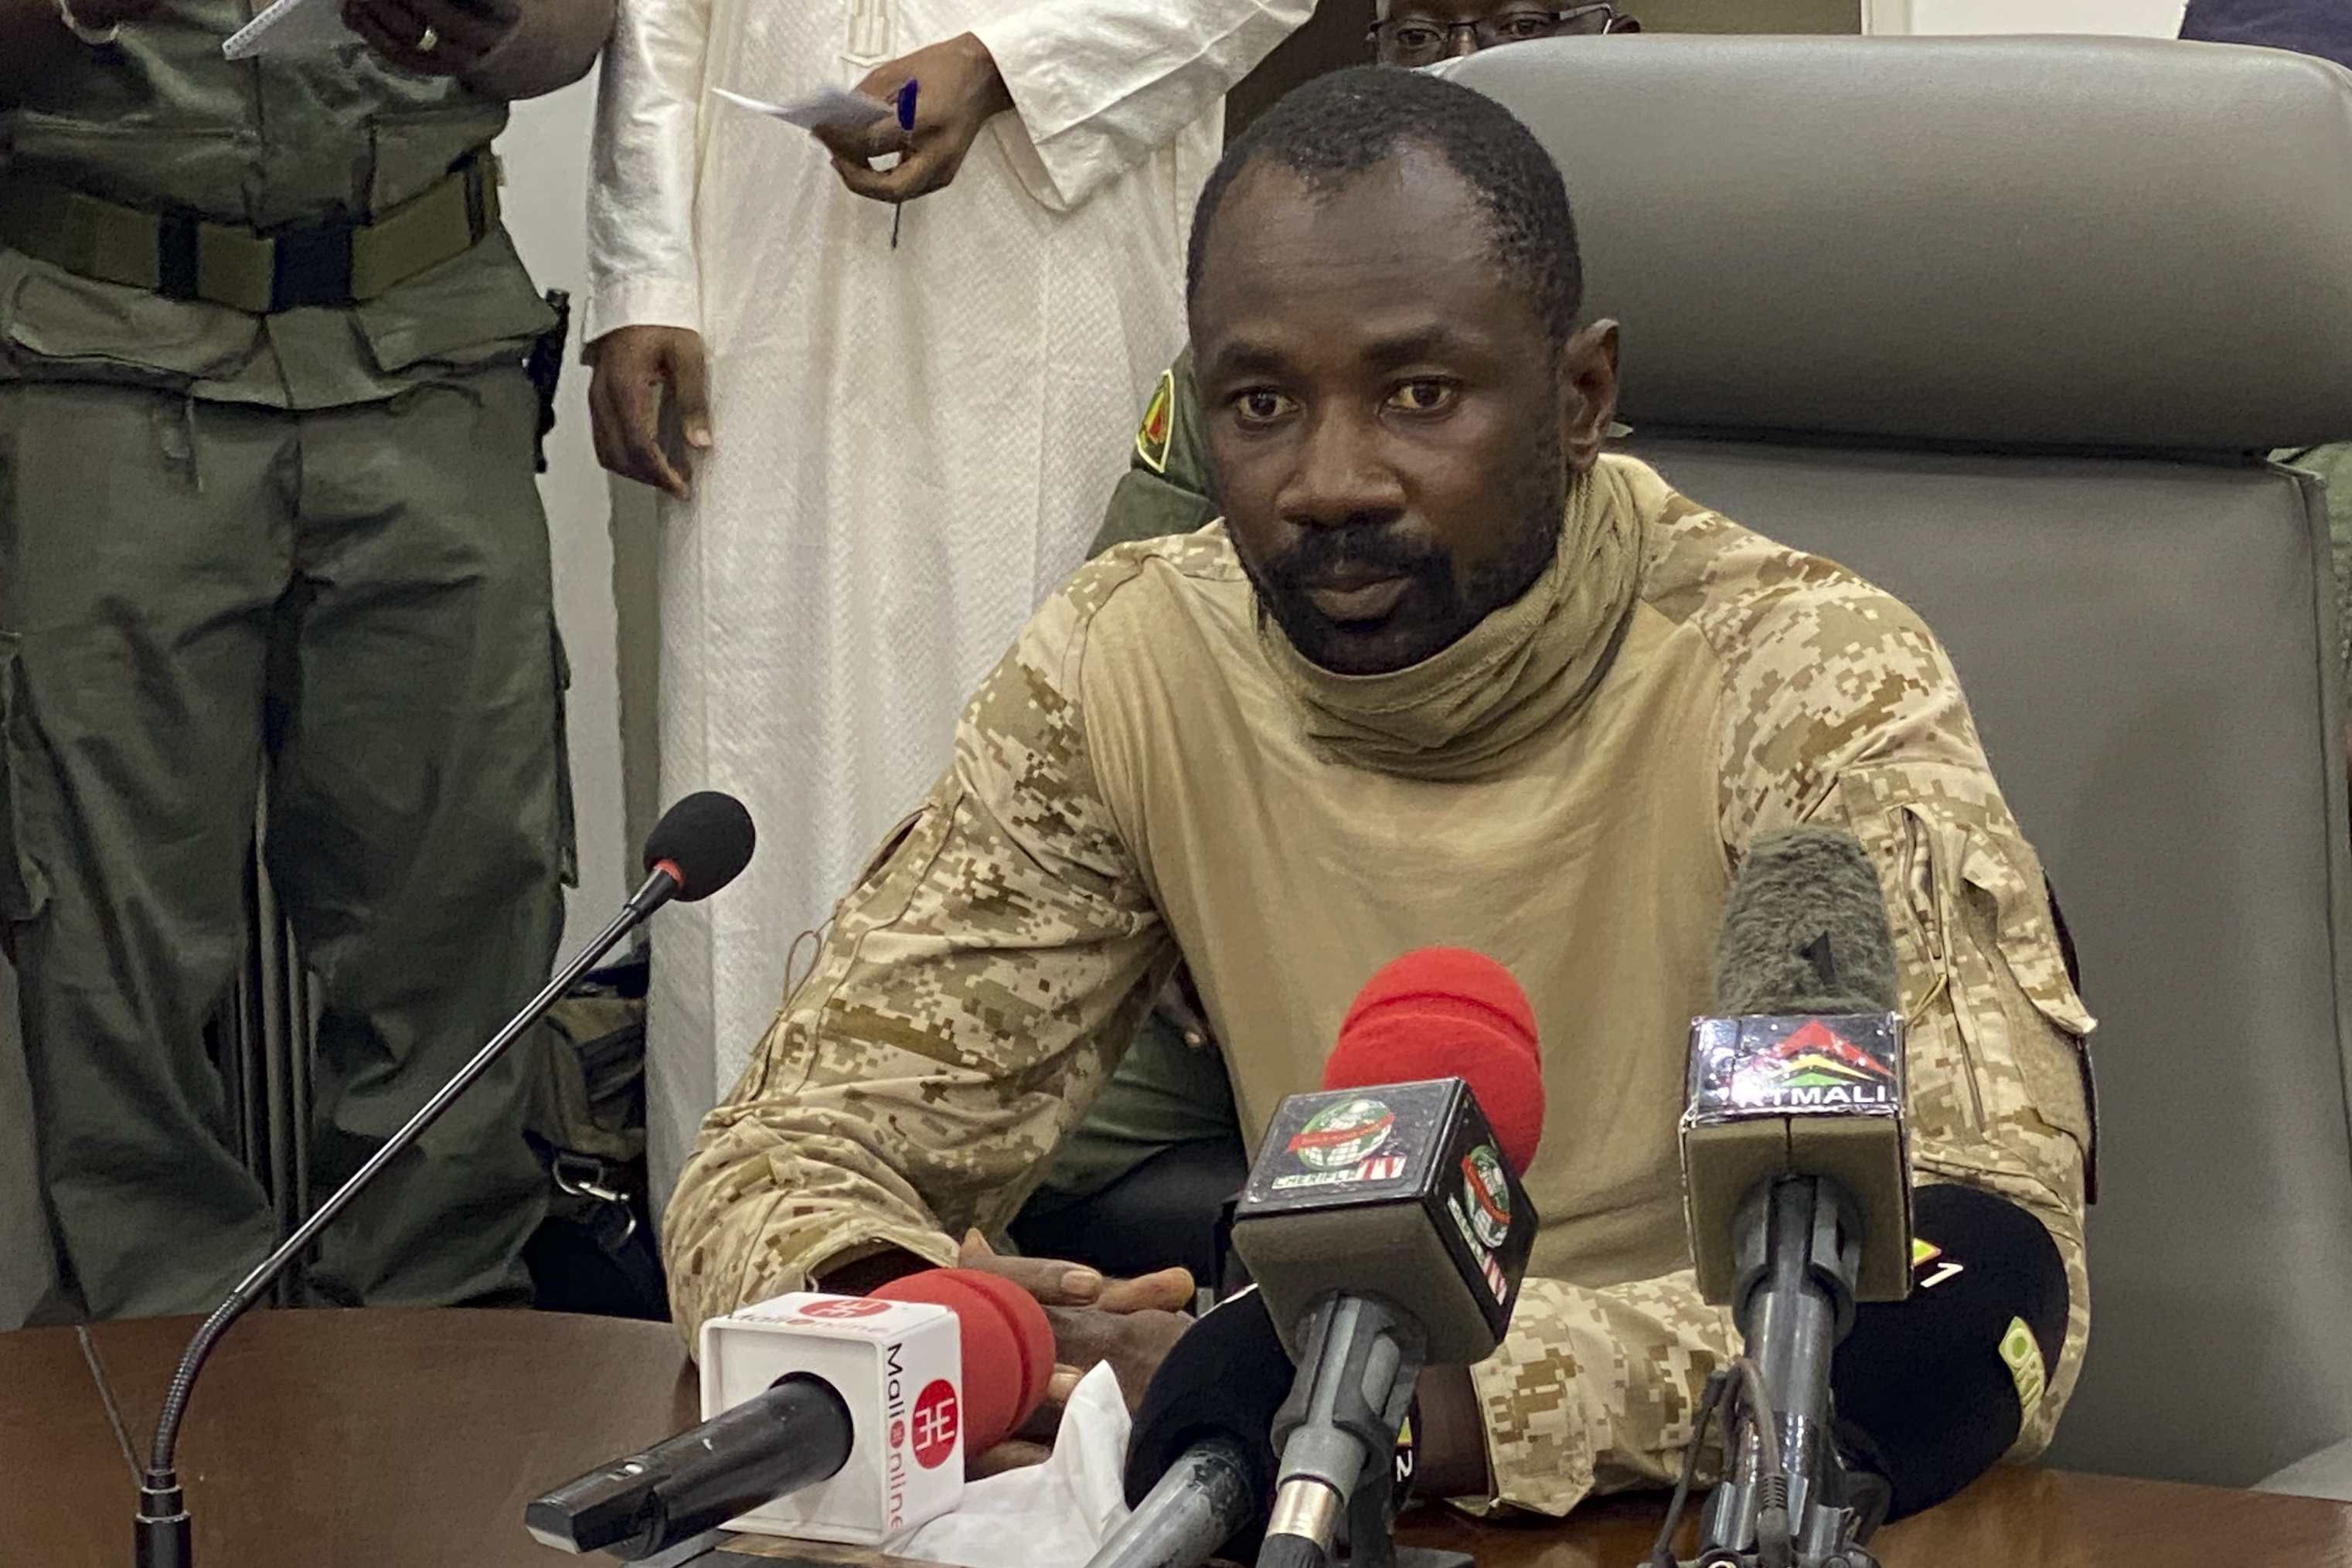 Mali: la Cour constitutionnelle déclare le colonel Assimi Goïta président de la transition